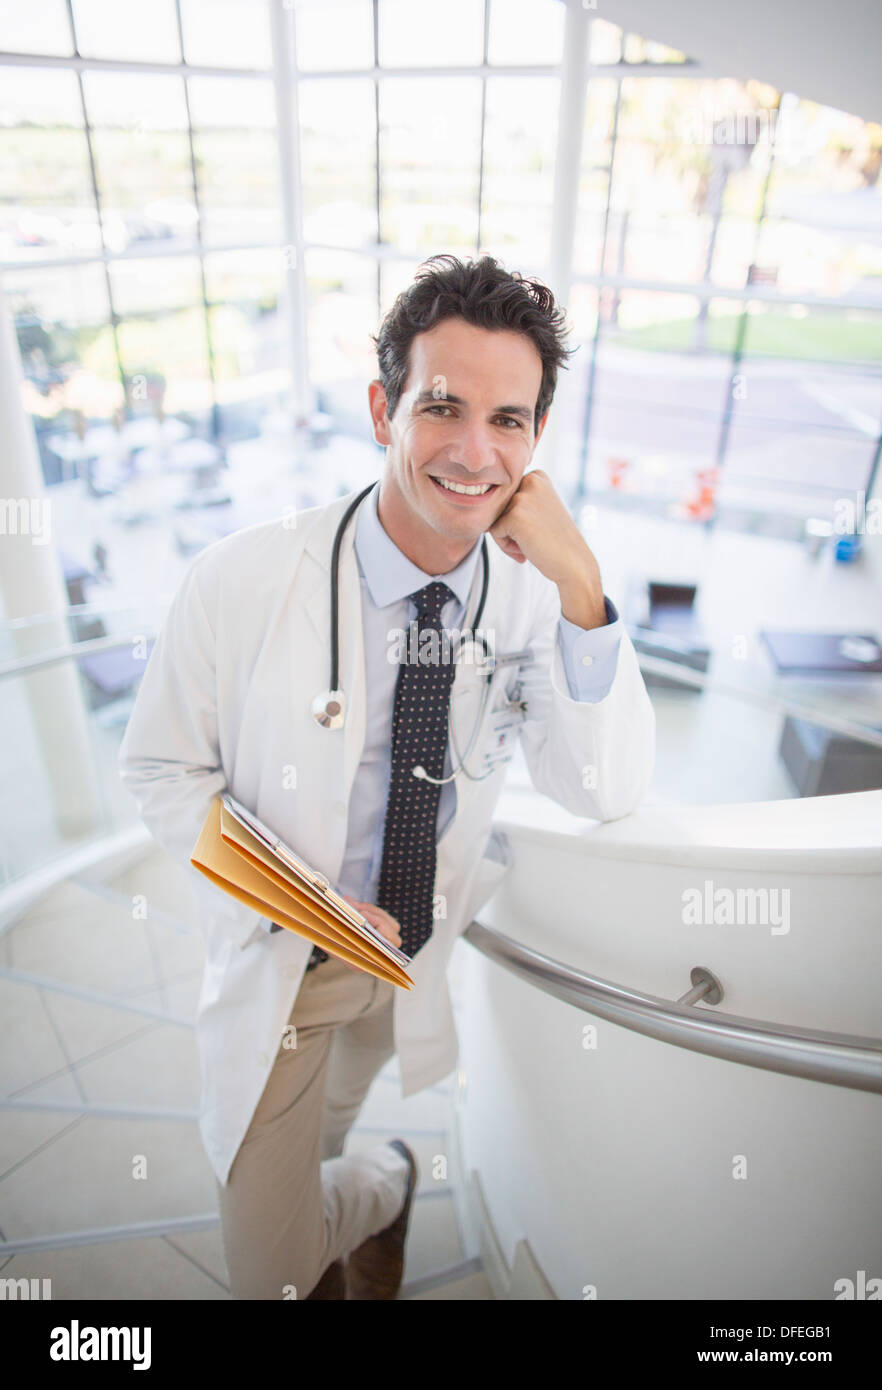 Porträt des lächelnden Arztes auf Treppen im Krankenhaus Stockfoto